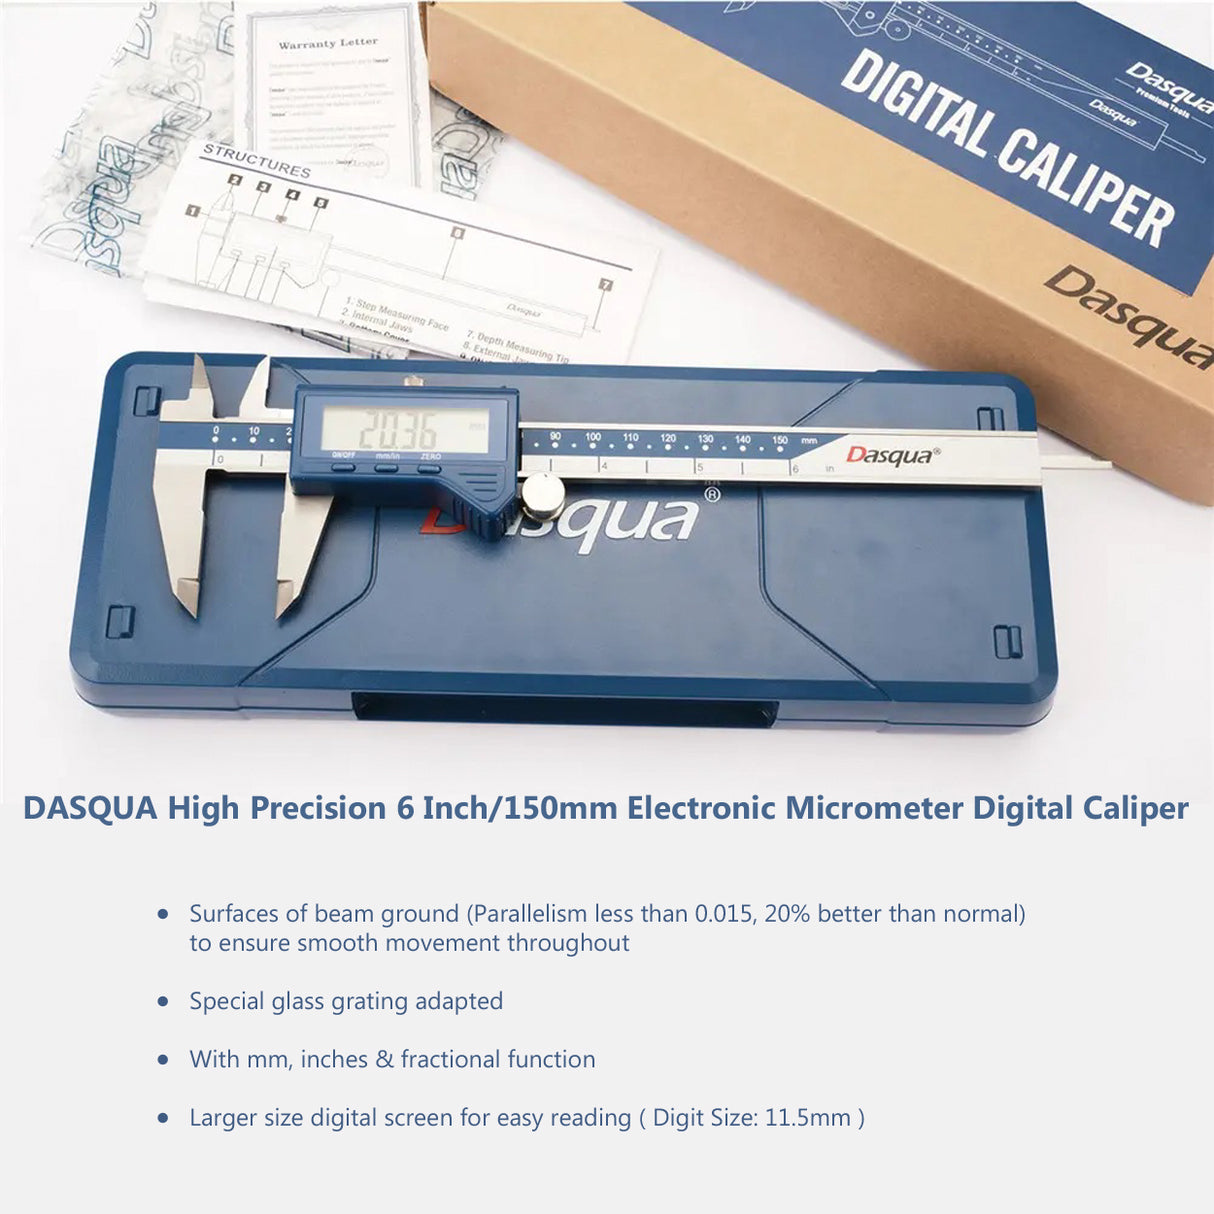 DASQUA High Precision 6 Inch / 150mm Electronic Micrometer Digital Caliper